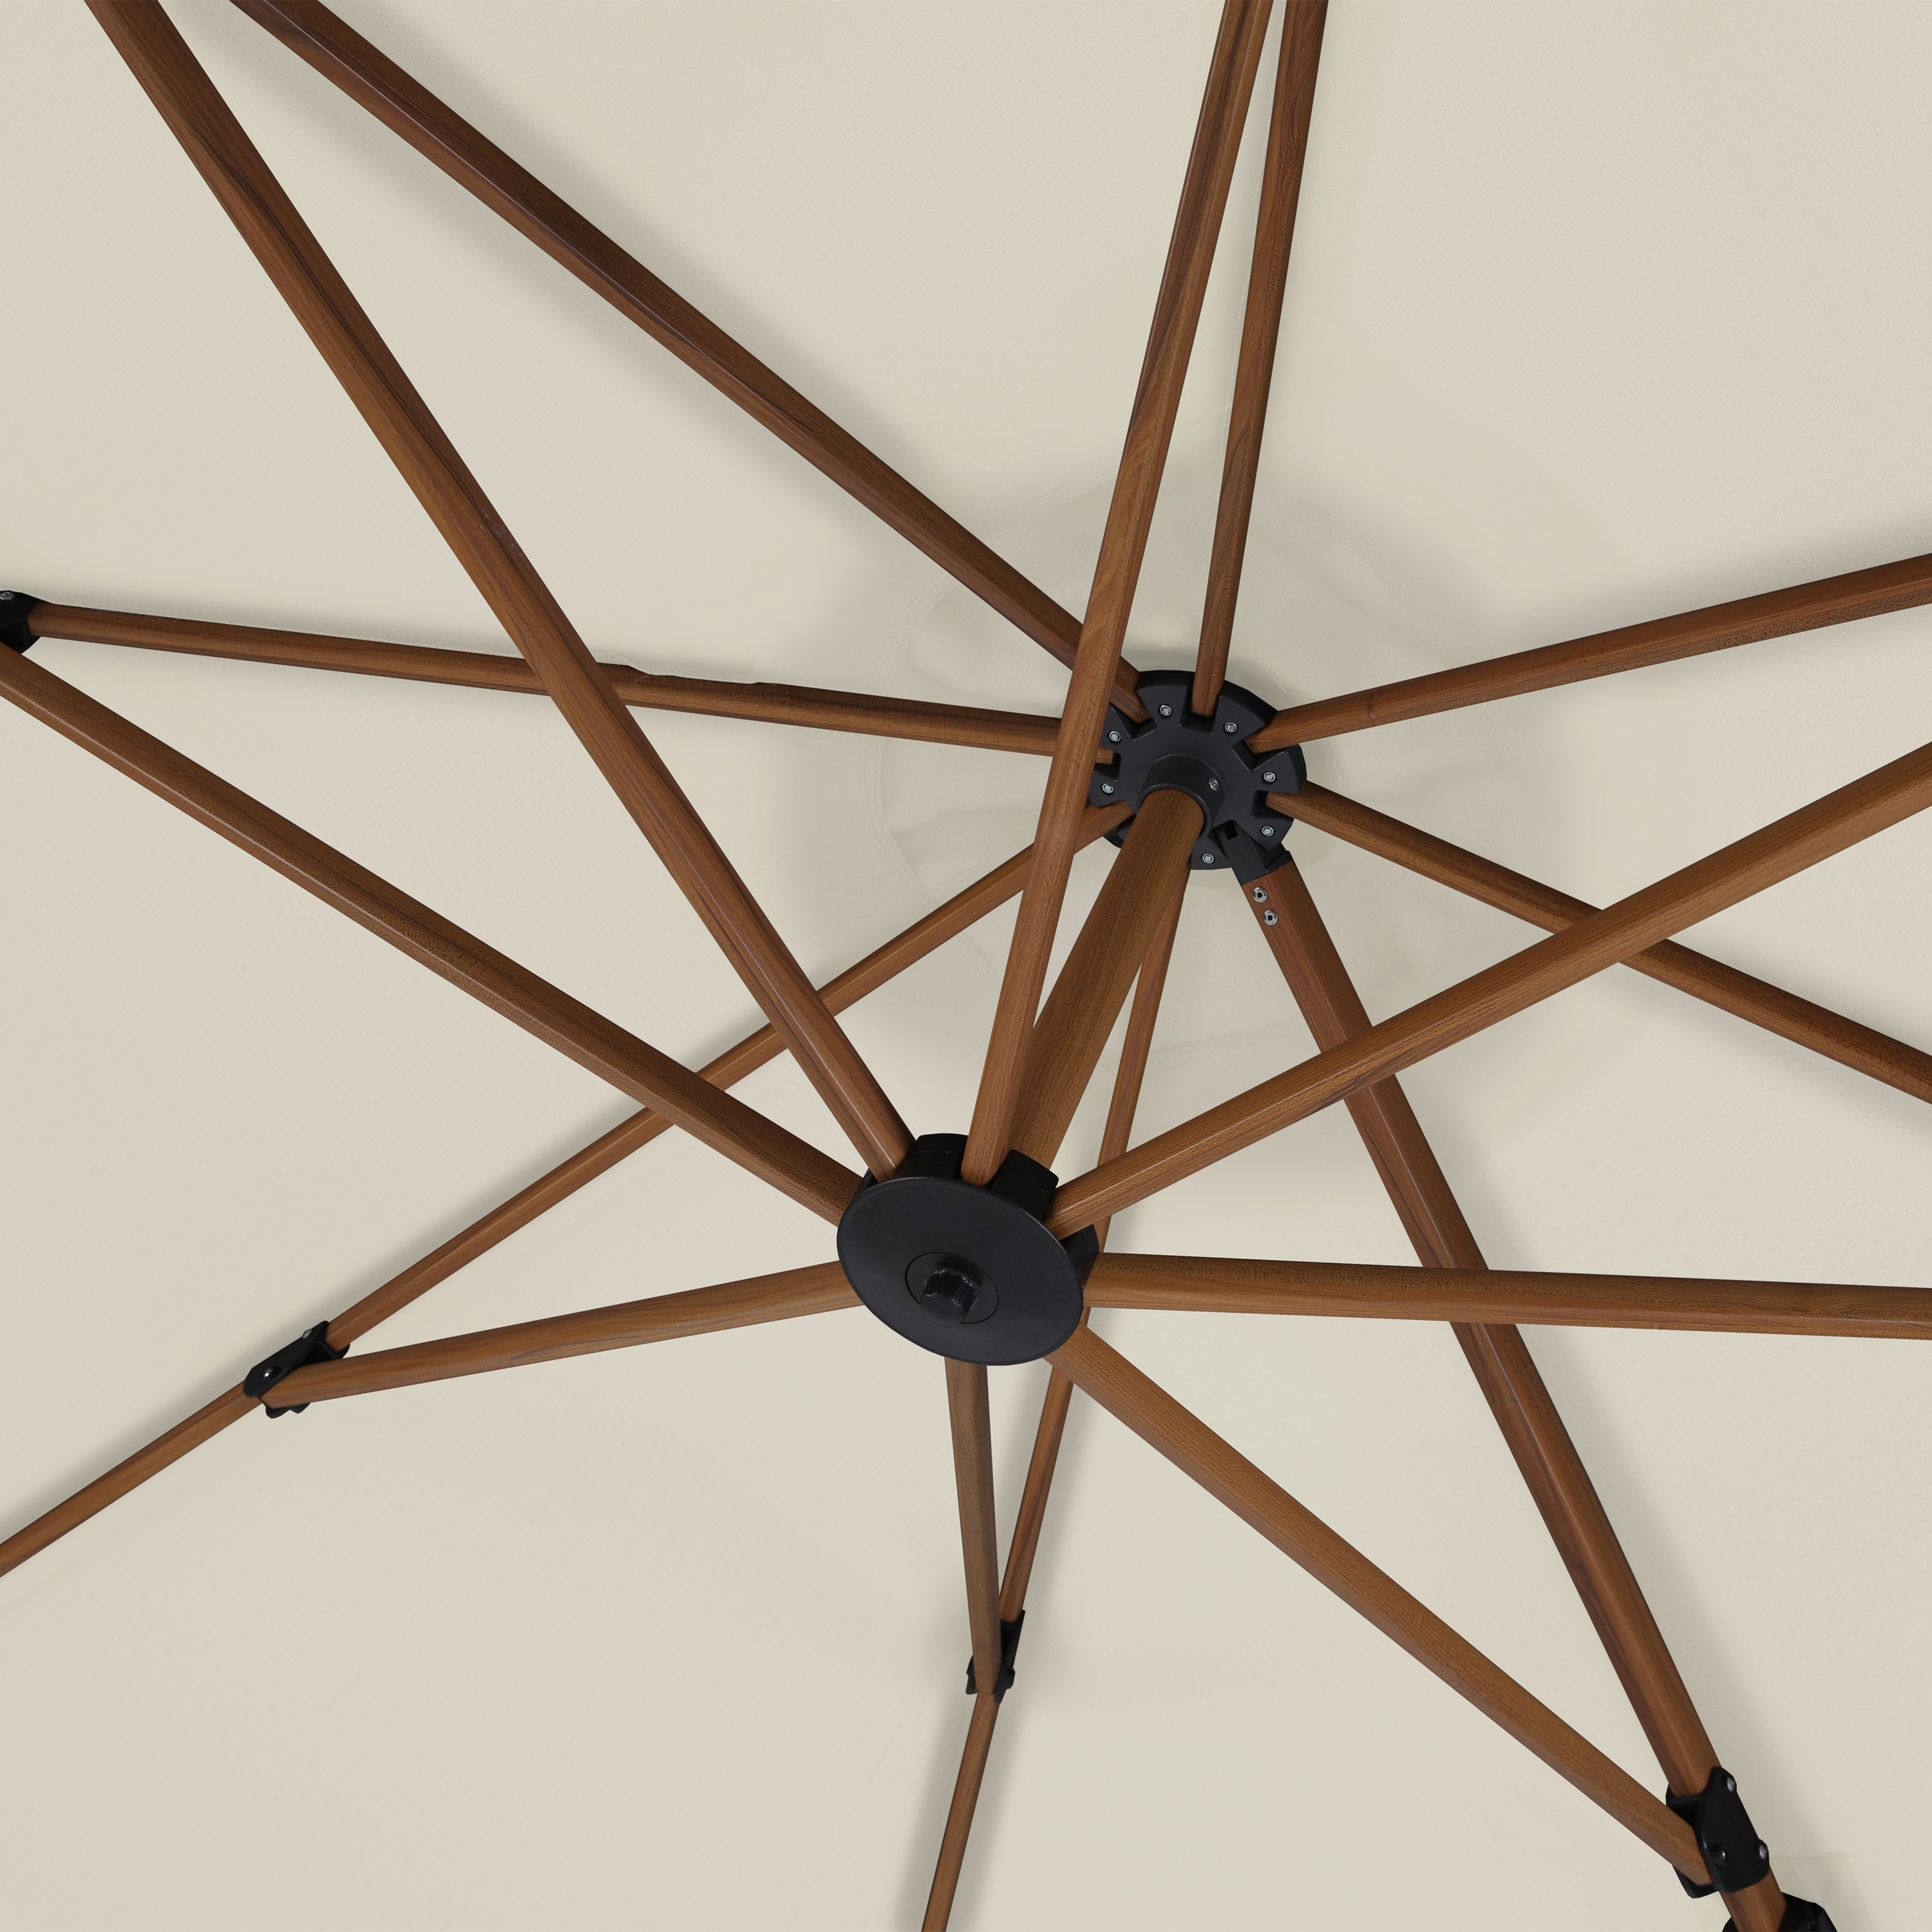 Cyrus hanging sun umbrella 3m round - wood colour / beige